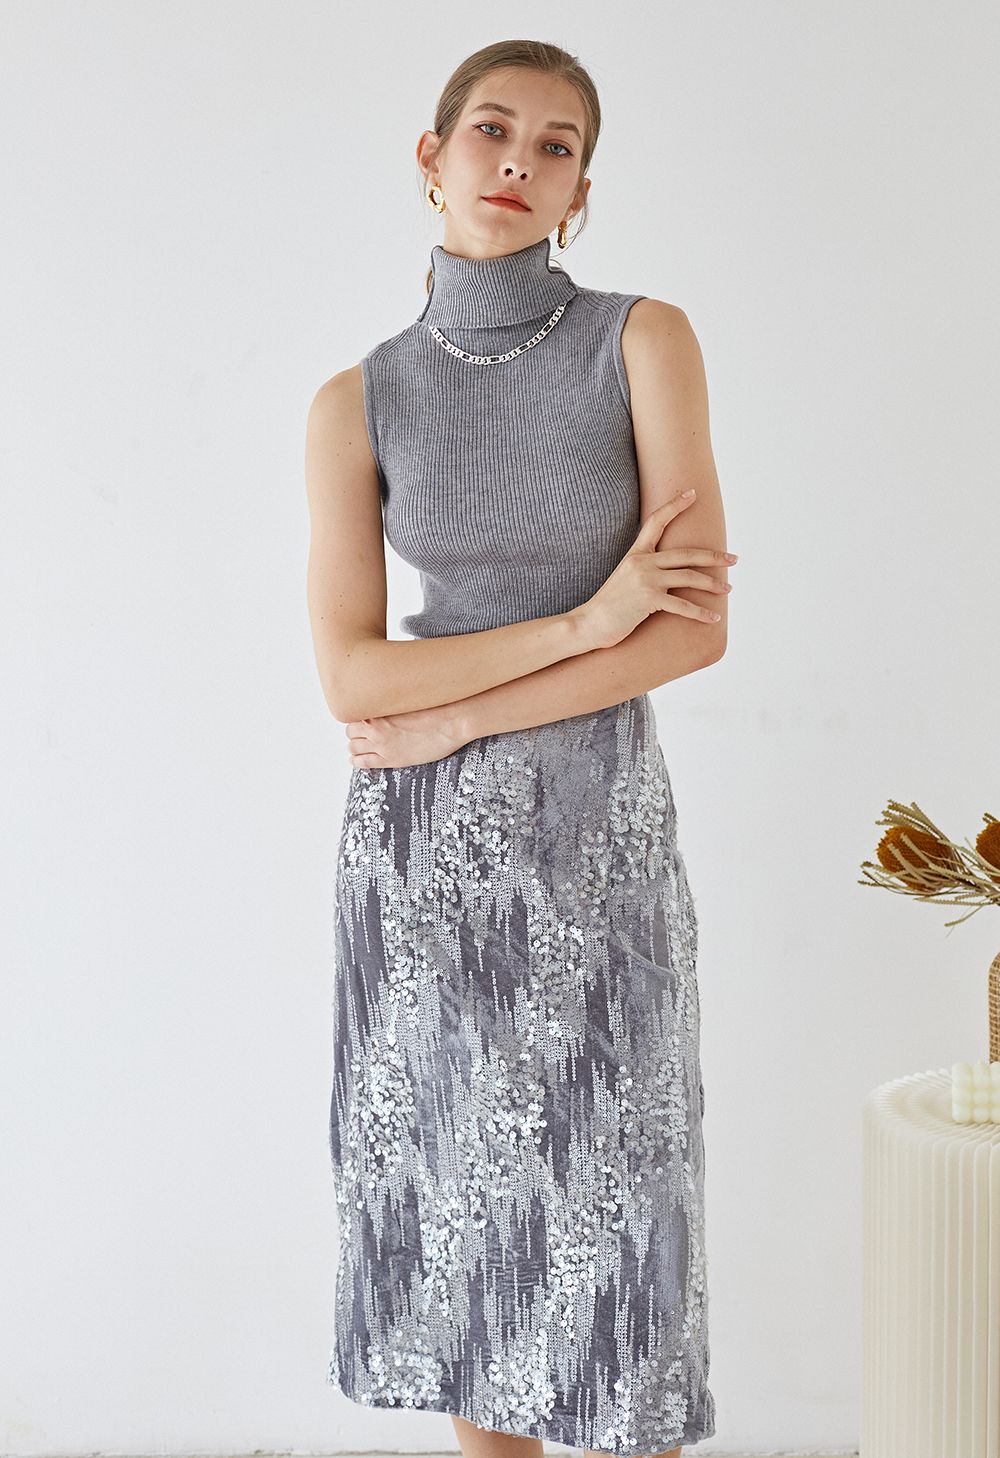 Velvet Sequins Embellished Pencil Skirt in Grey